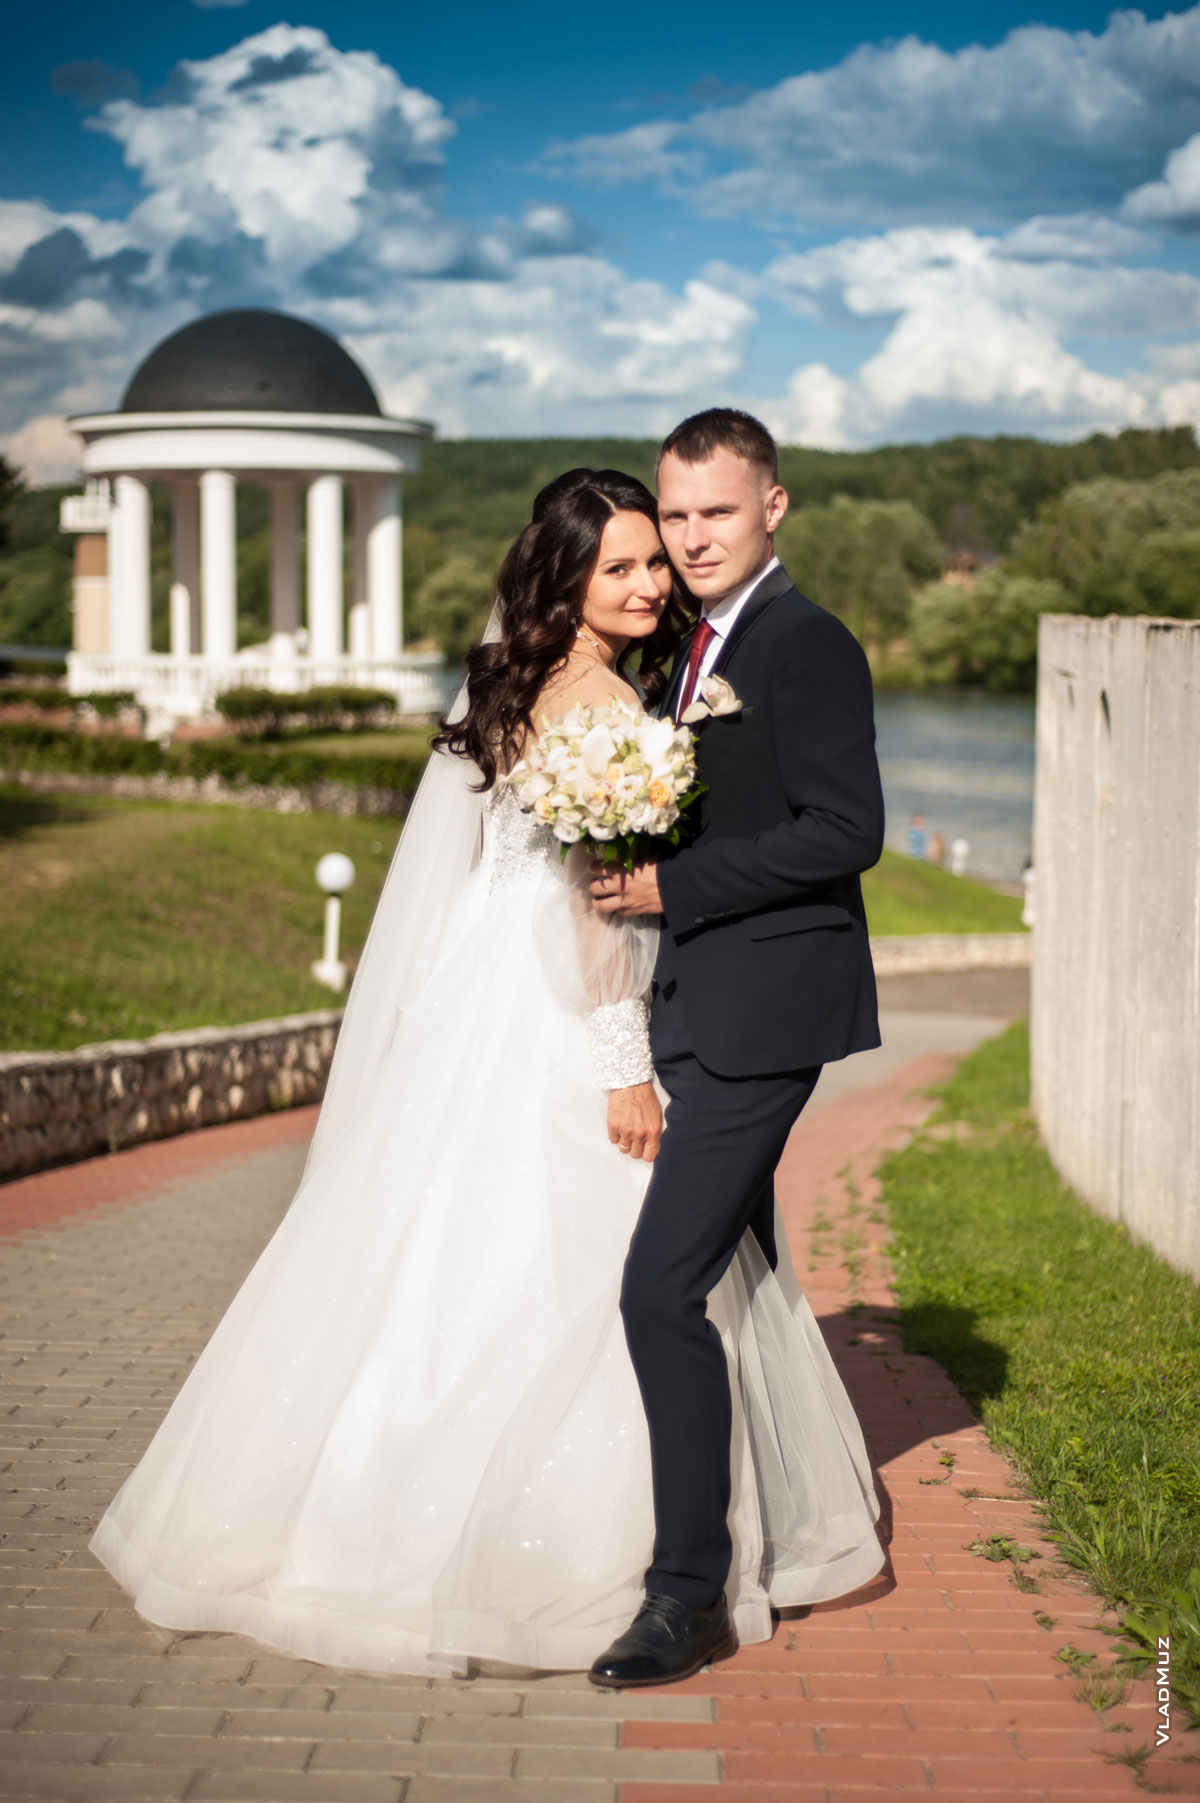 Фотопортрет свадебной пары в полный рост на фоне ротонды и синего облачного неба